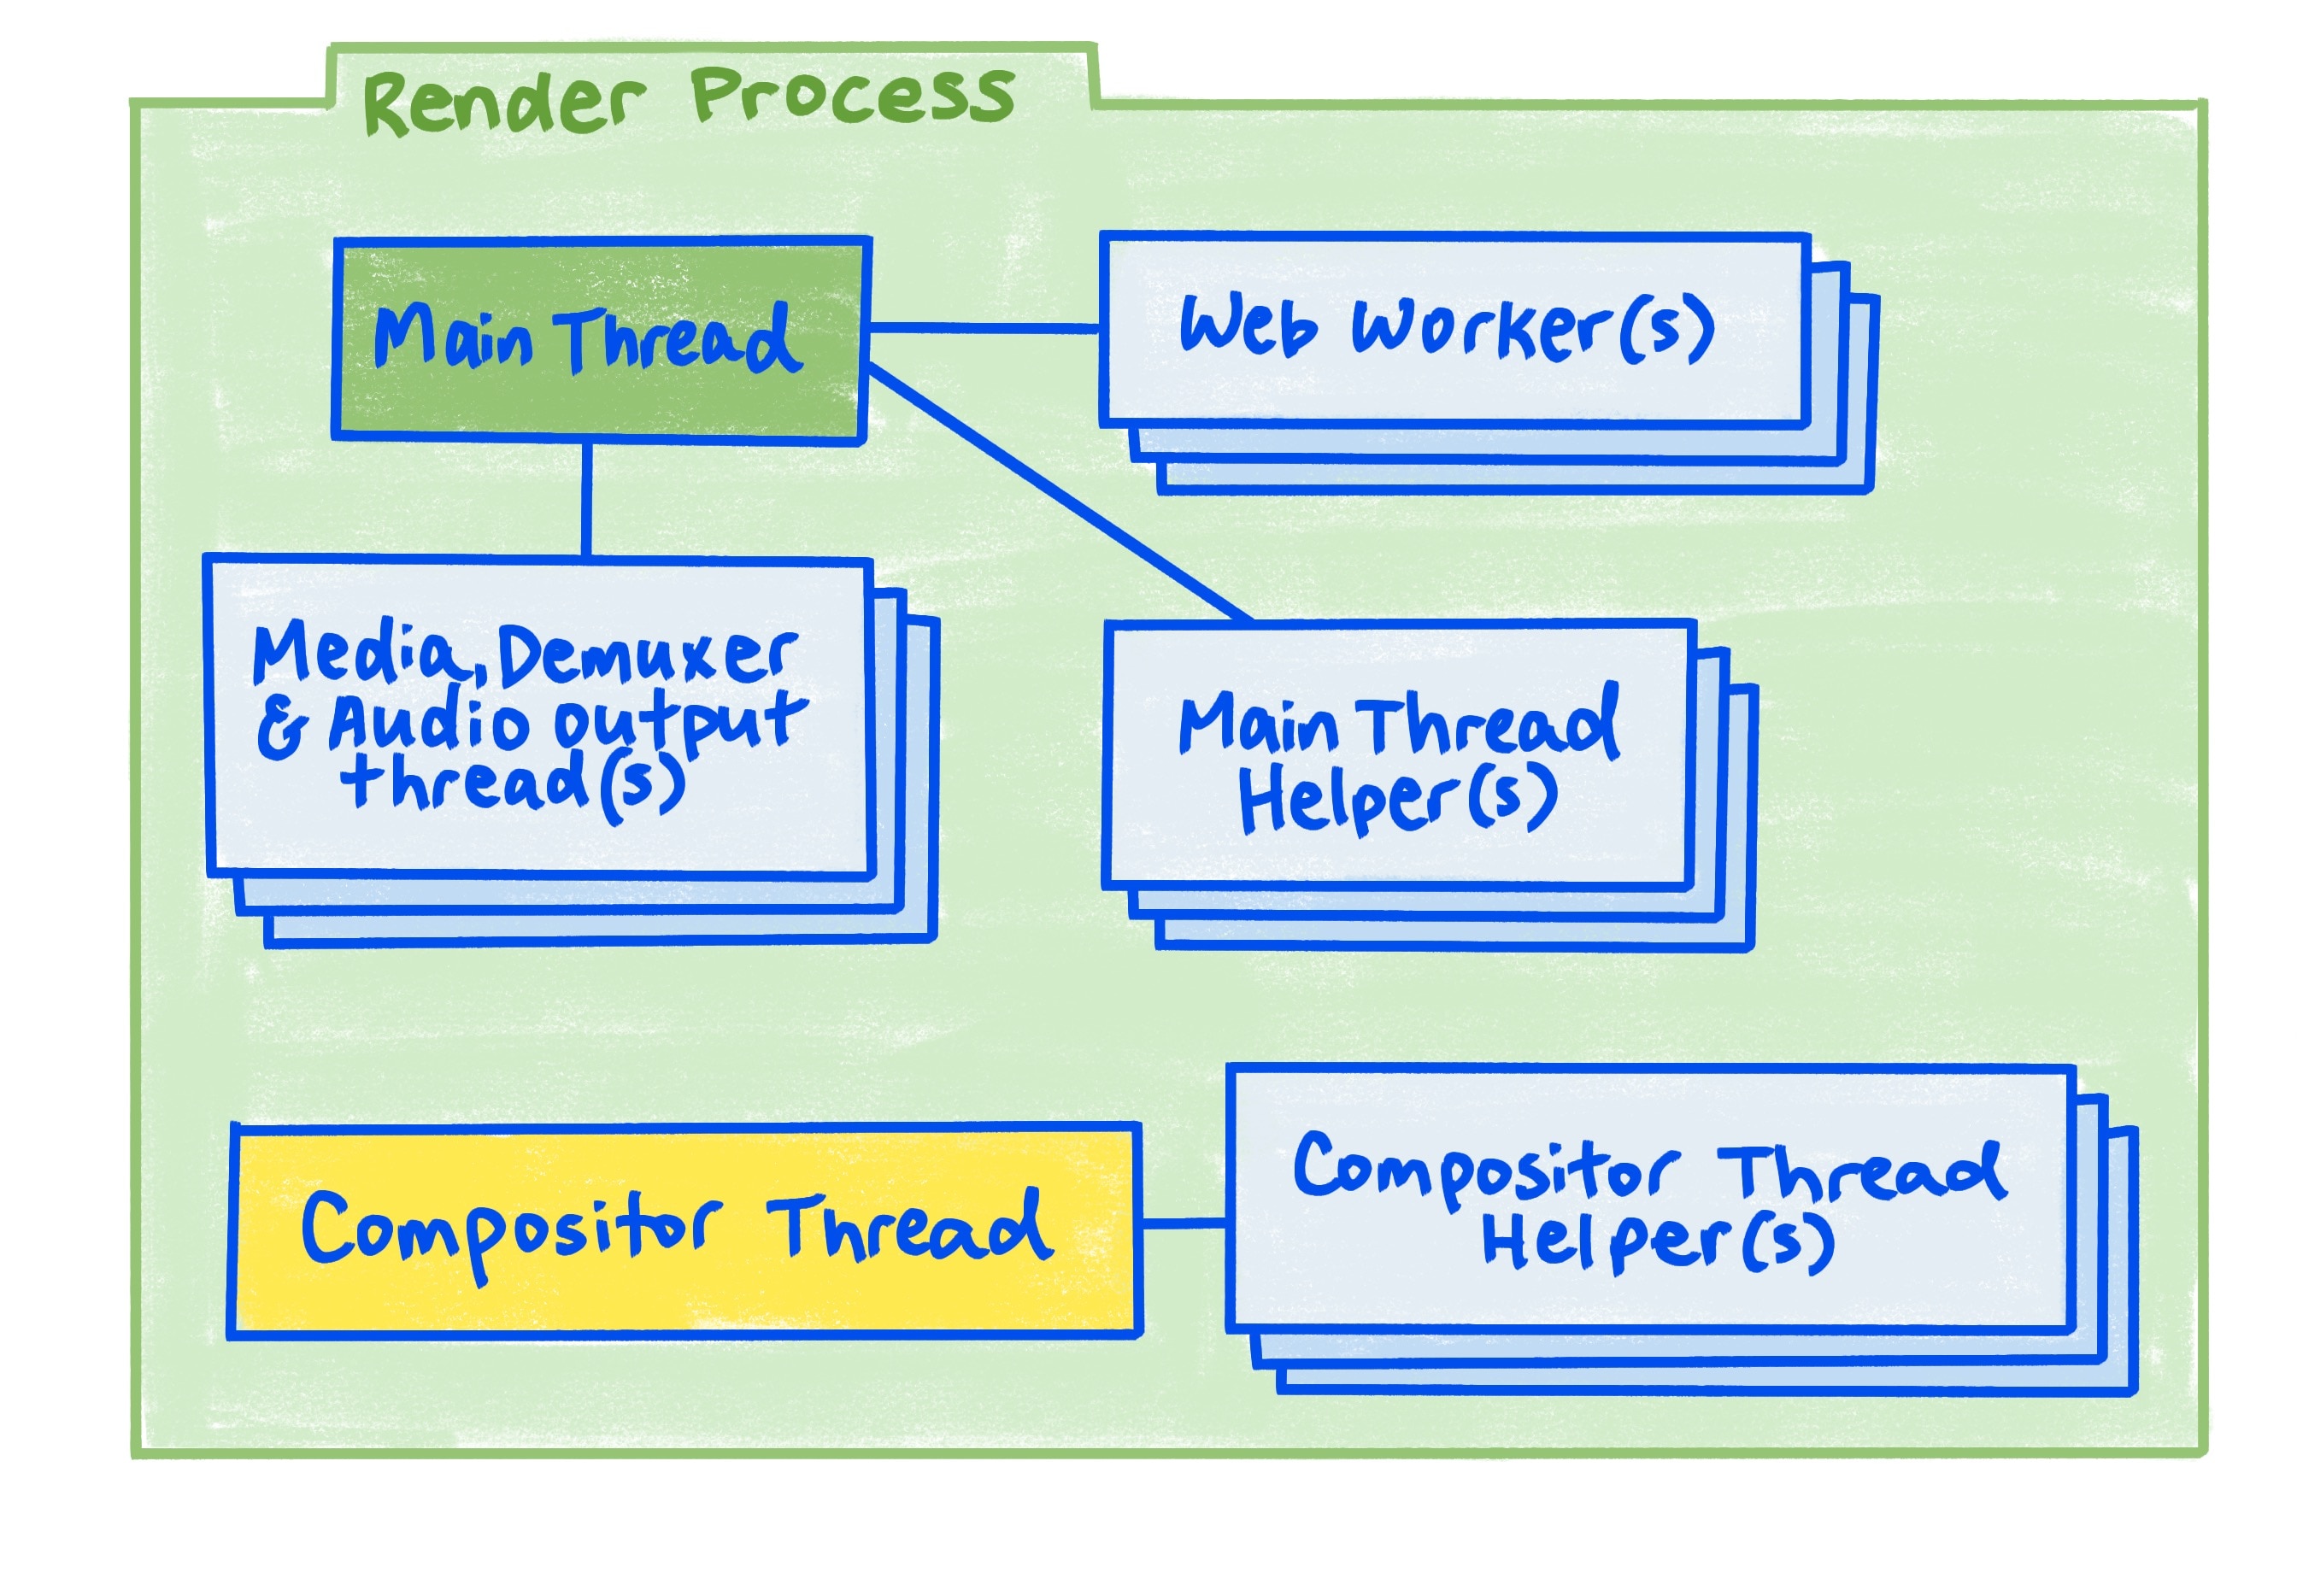 Een diagram van het renderproces zoals beschreven in het artikel.